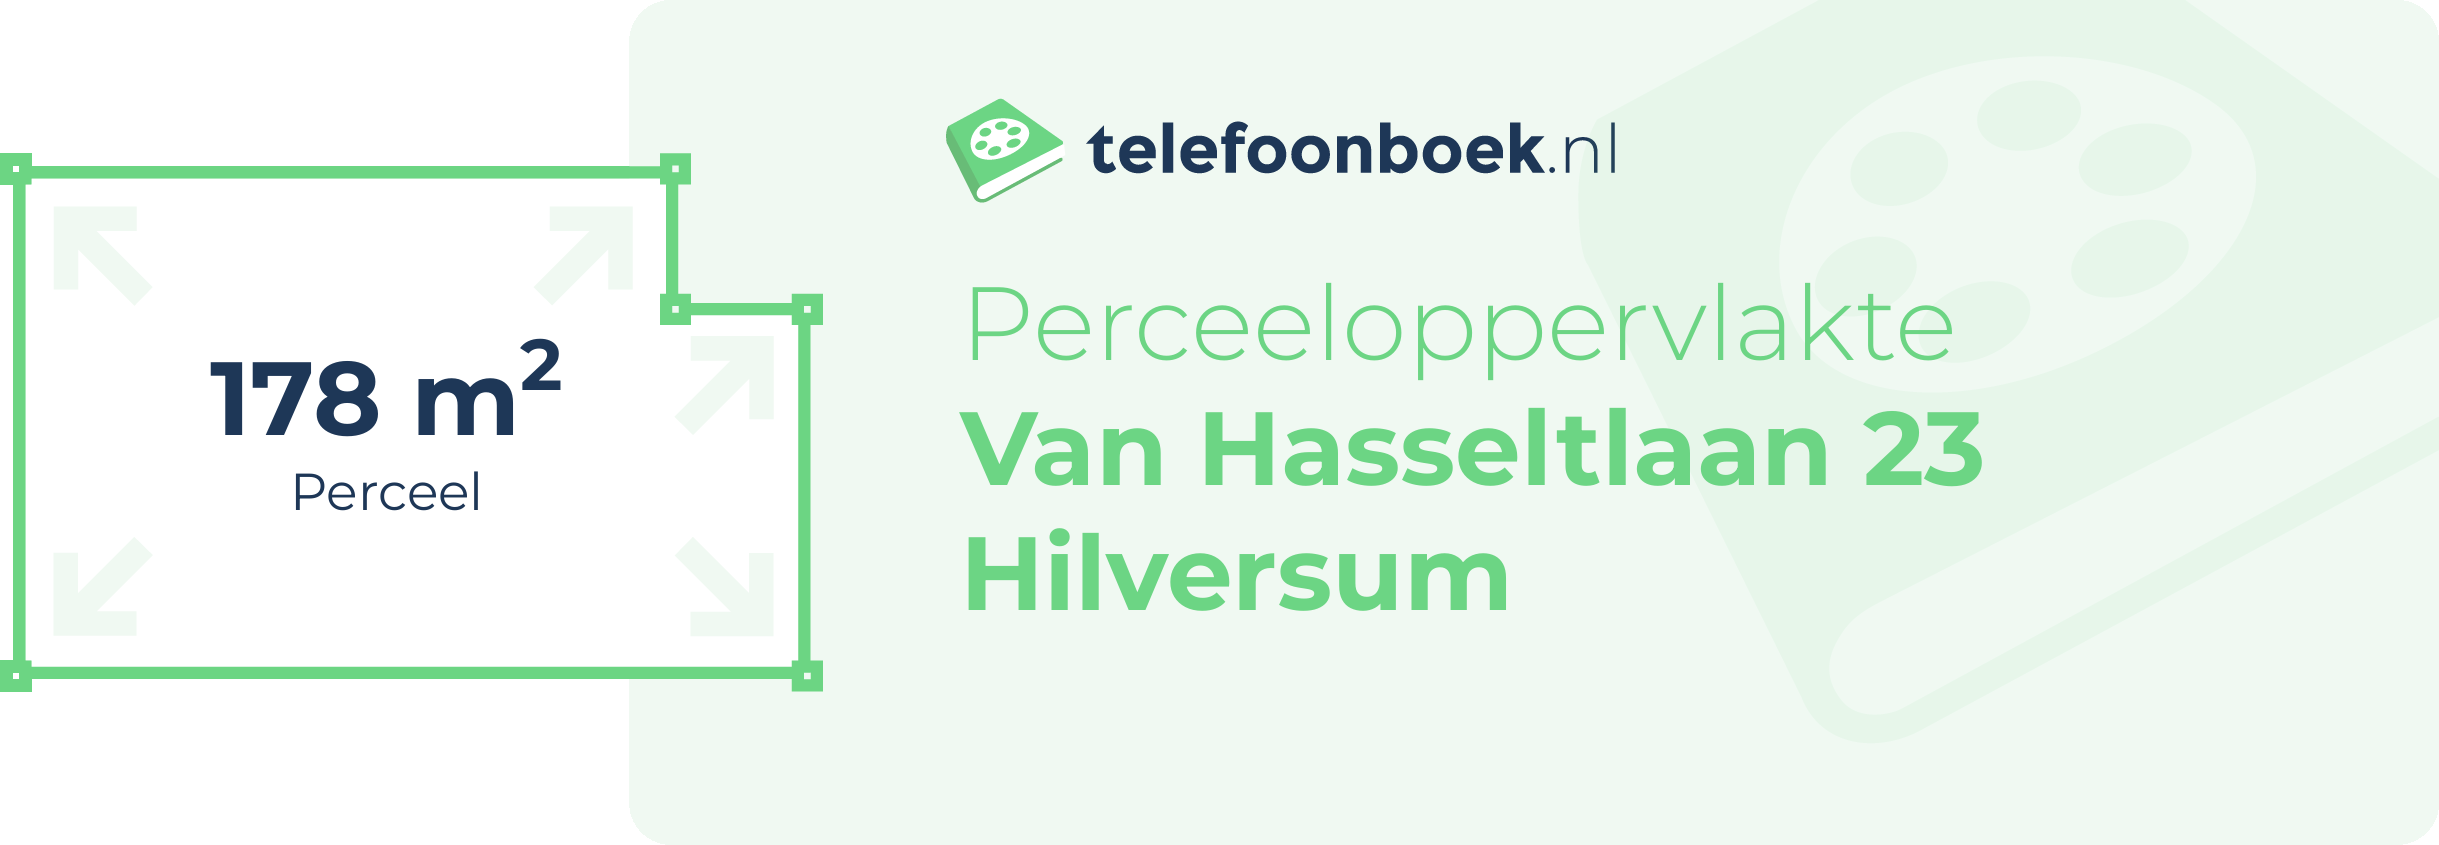 Perceeloppervlakte Van Hasseltlaan 23 Hilversum